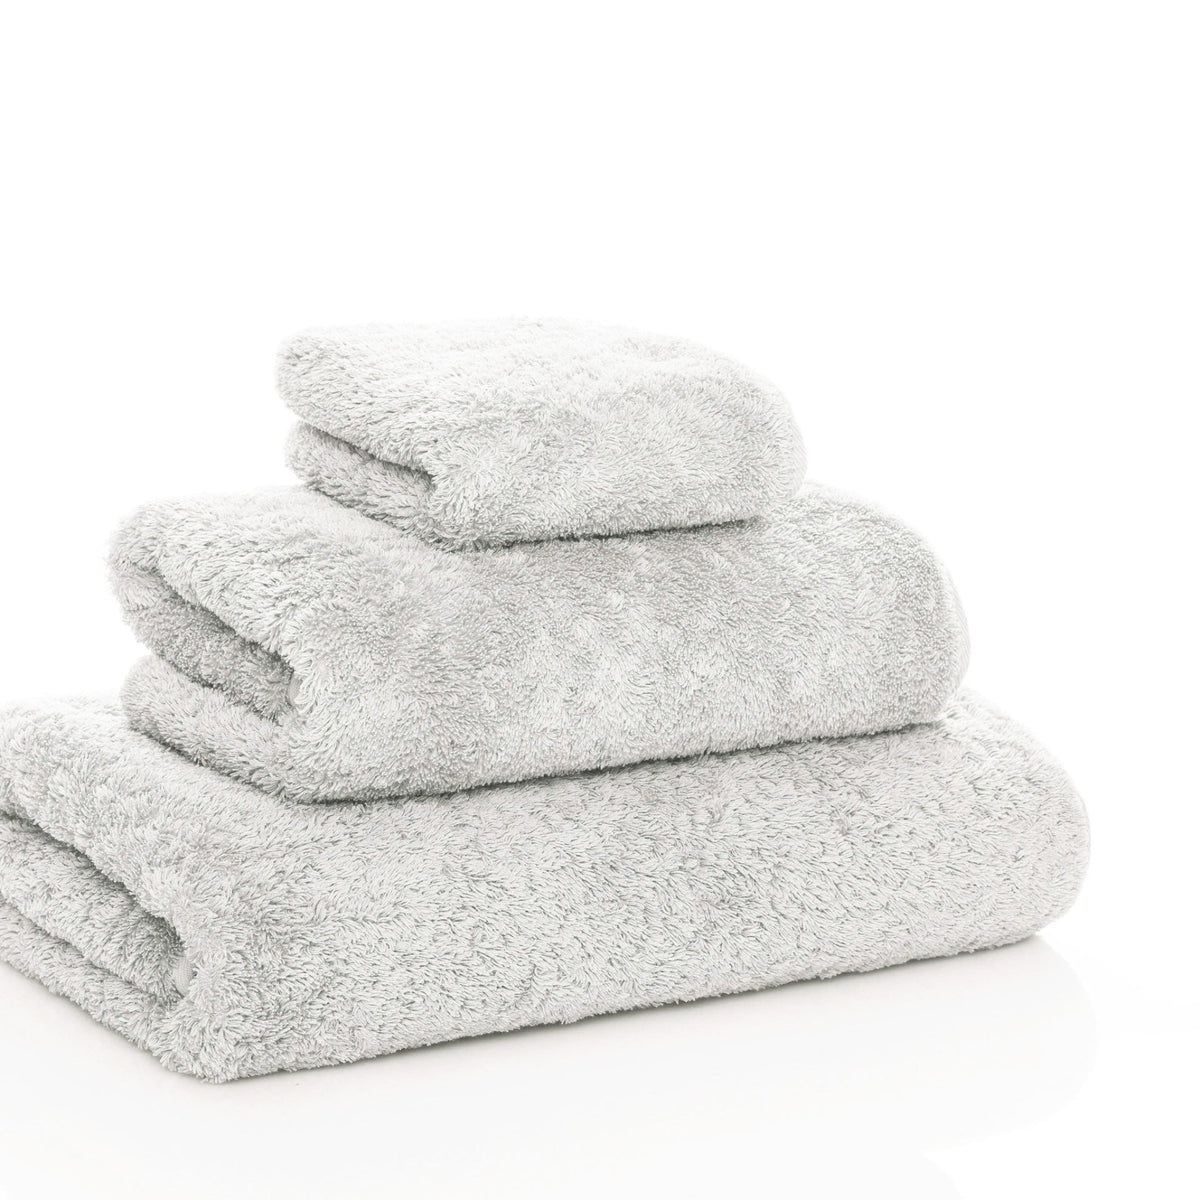 https://flandb.com/cdn/shop/products/Graccioza-Egoist-Bath-Towels-Cloud-2_1200x.jpg?v=1682505007